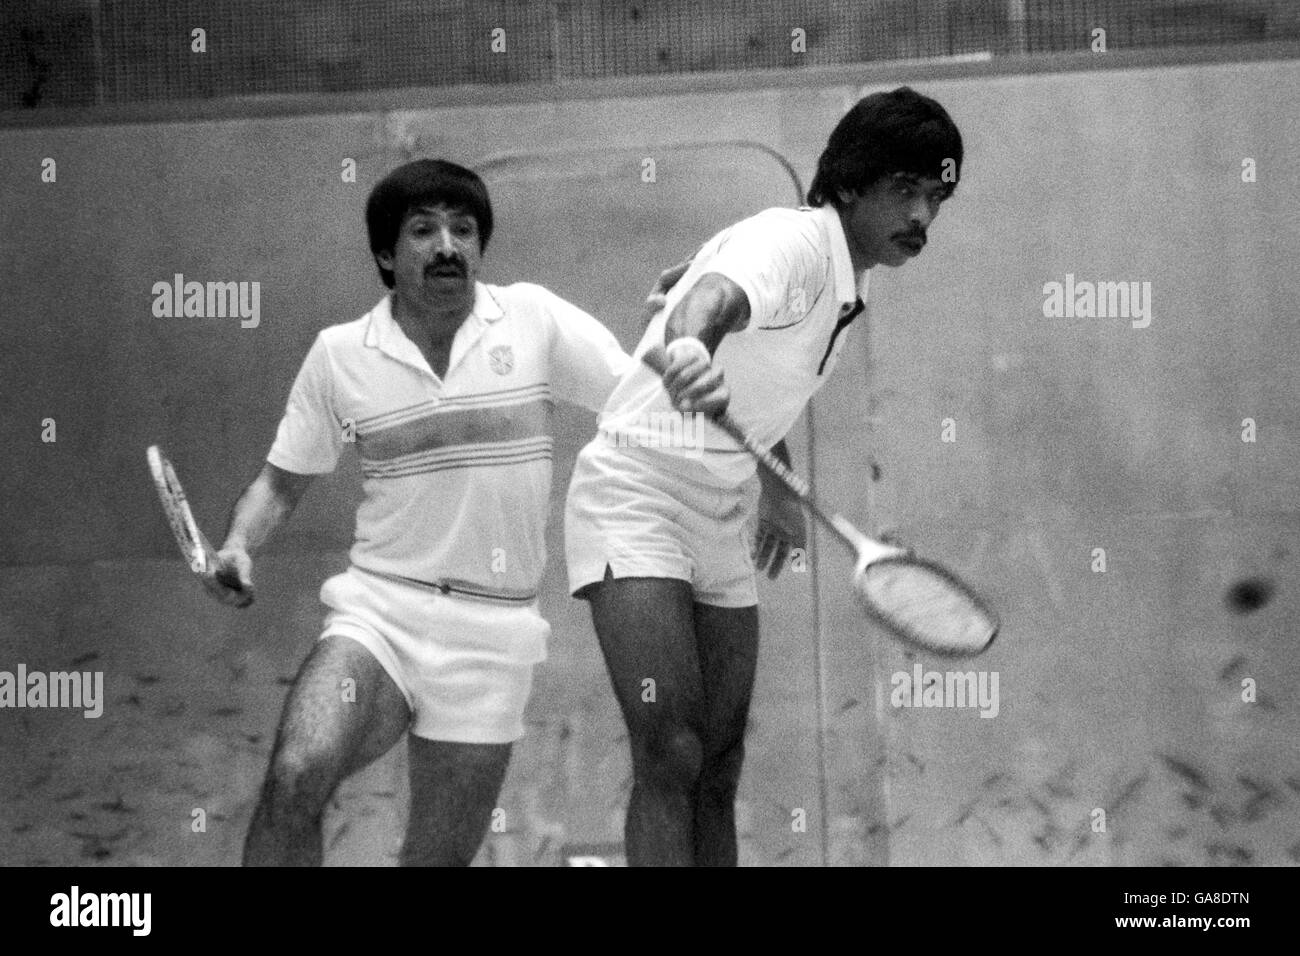 Squash - Championnat britannique d'Open de Tate.Jahangir Khan (r) et Qamar Zaman (l) en action Banque D'Images